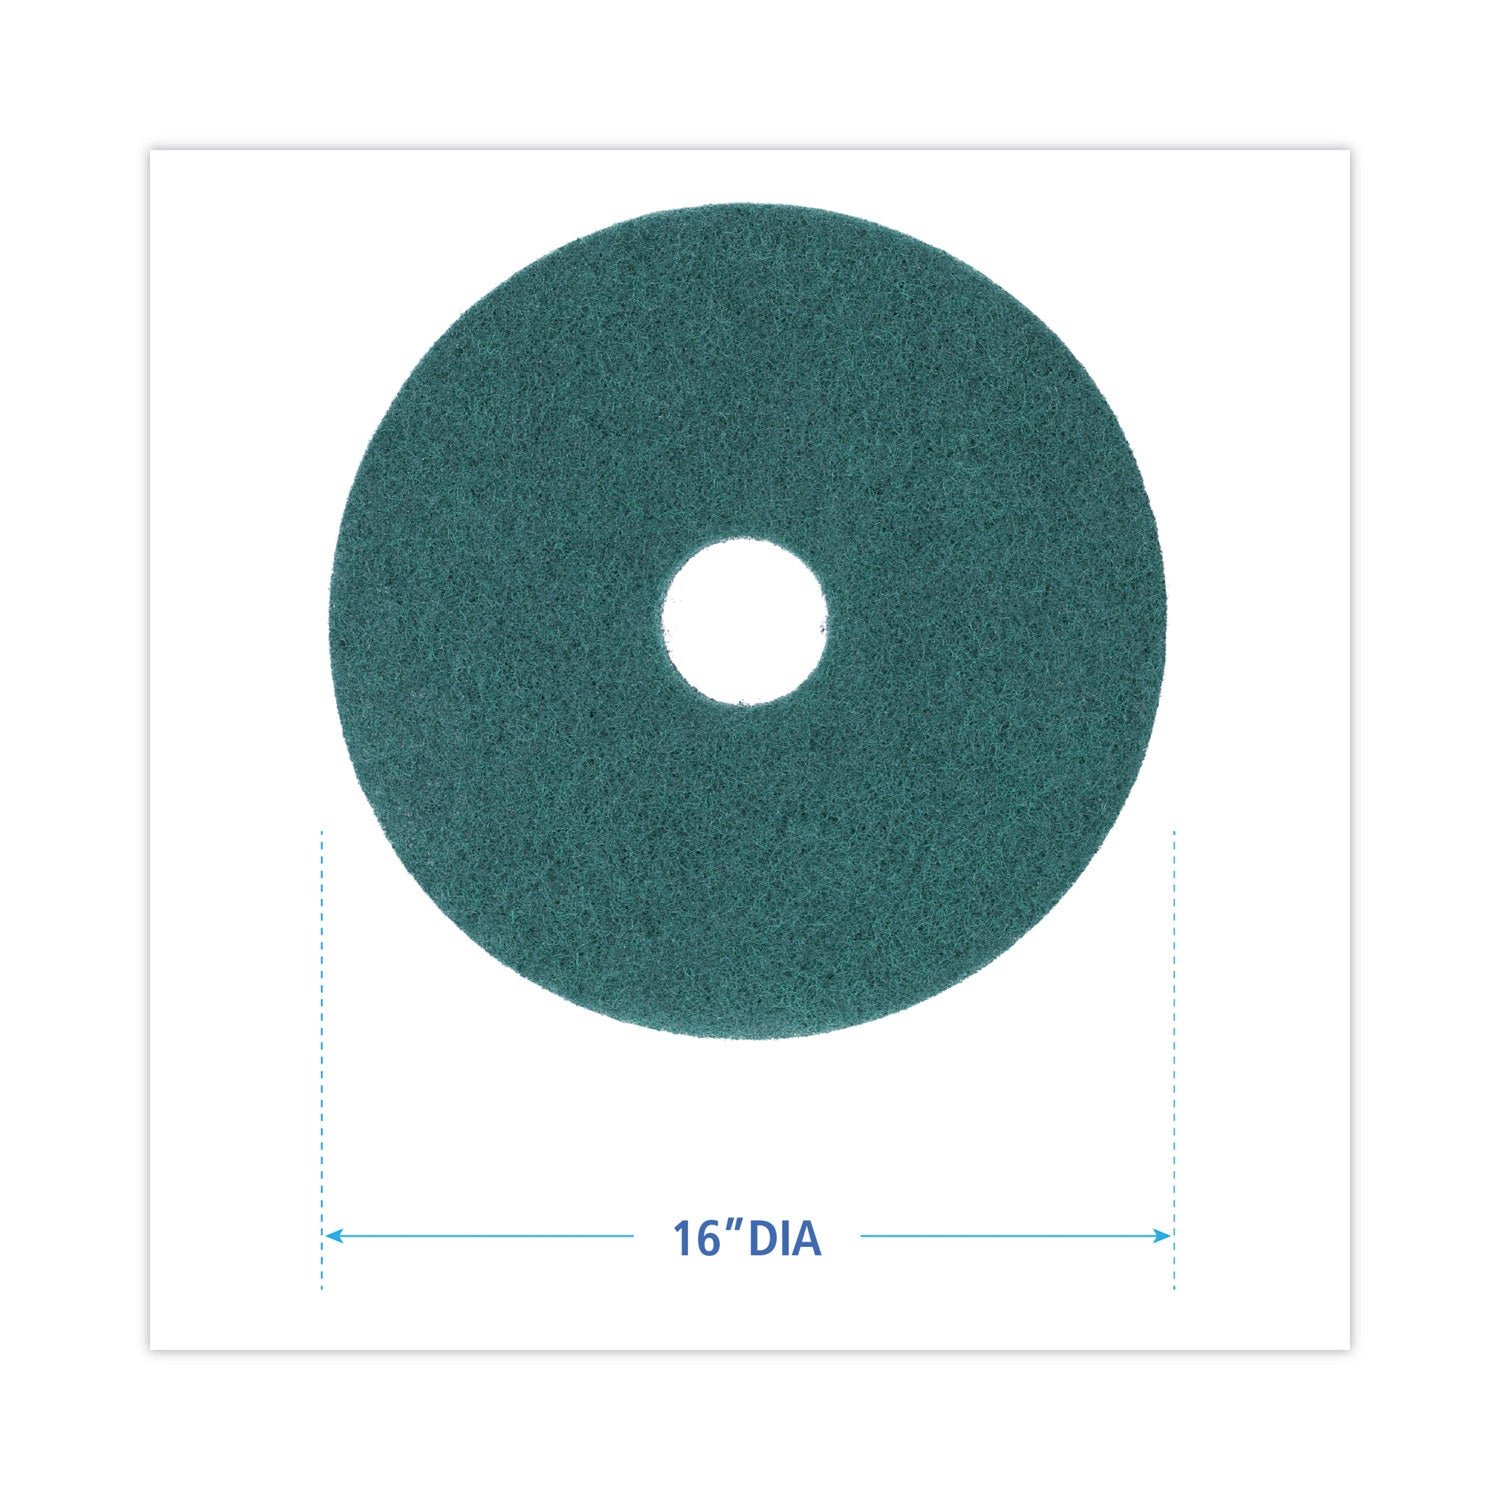 heavy-duty-scrubbing-floor-pads-16-diameter-green-5-carton_bwk4016gre - 2